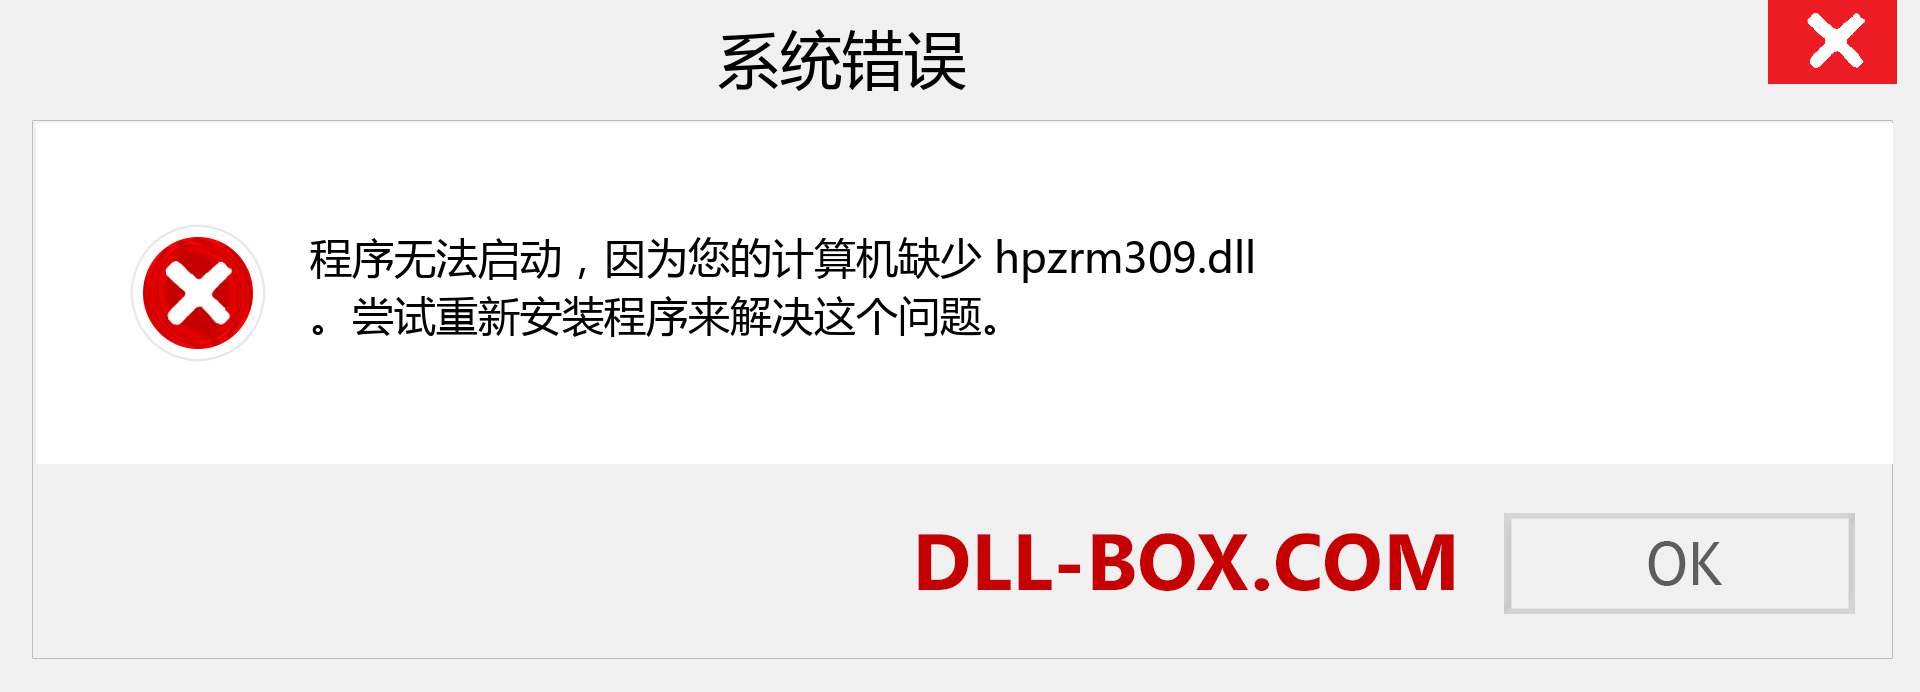 hpzrm309.dll 文件丢失？。 适用于 Windows 7、8、10 的下载 - 修复 Windows、照片、图像上的 hpzrm309 dll 丢失错误